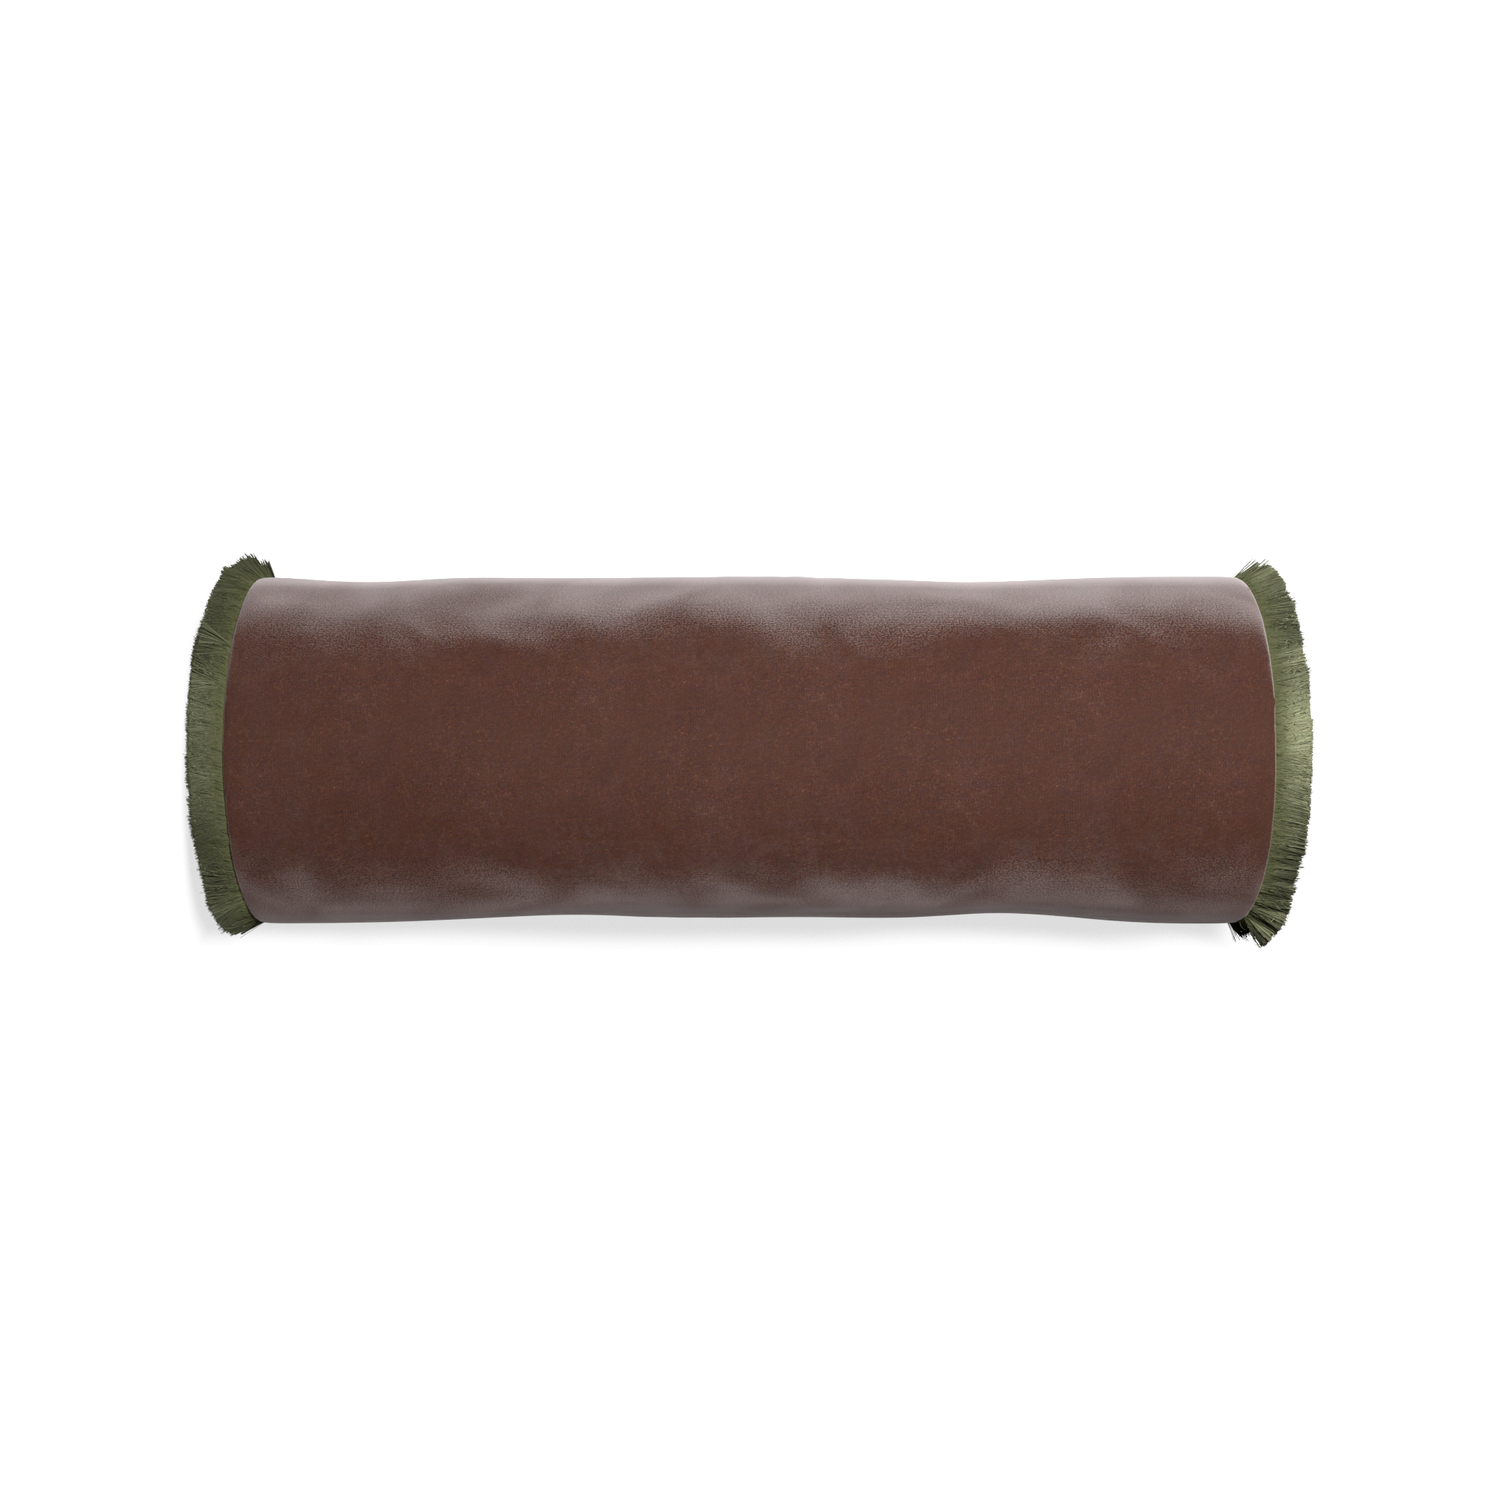 bolster brown velvet pillow with sage green fringe